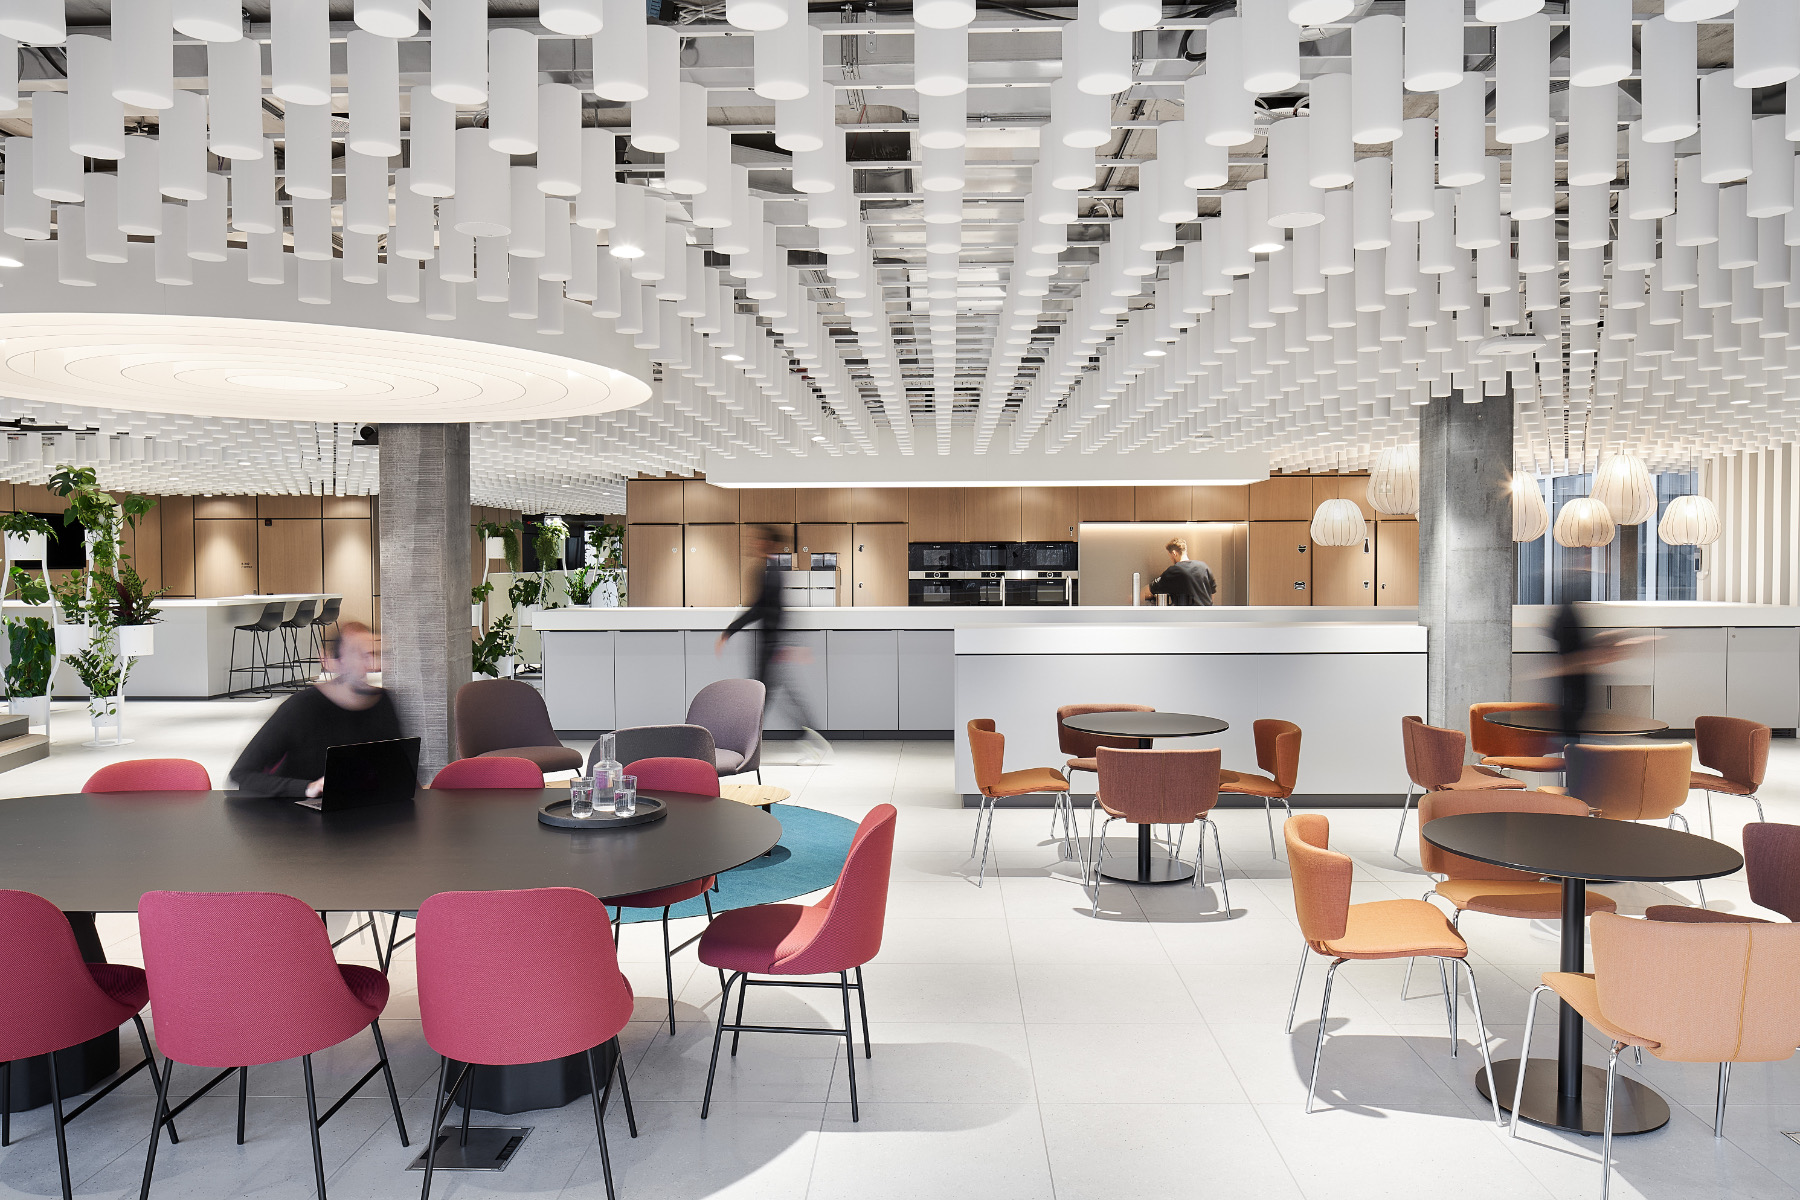 【某製薬会社のオフィスデザイン】- スイス, チューリッヒのカフェスペース